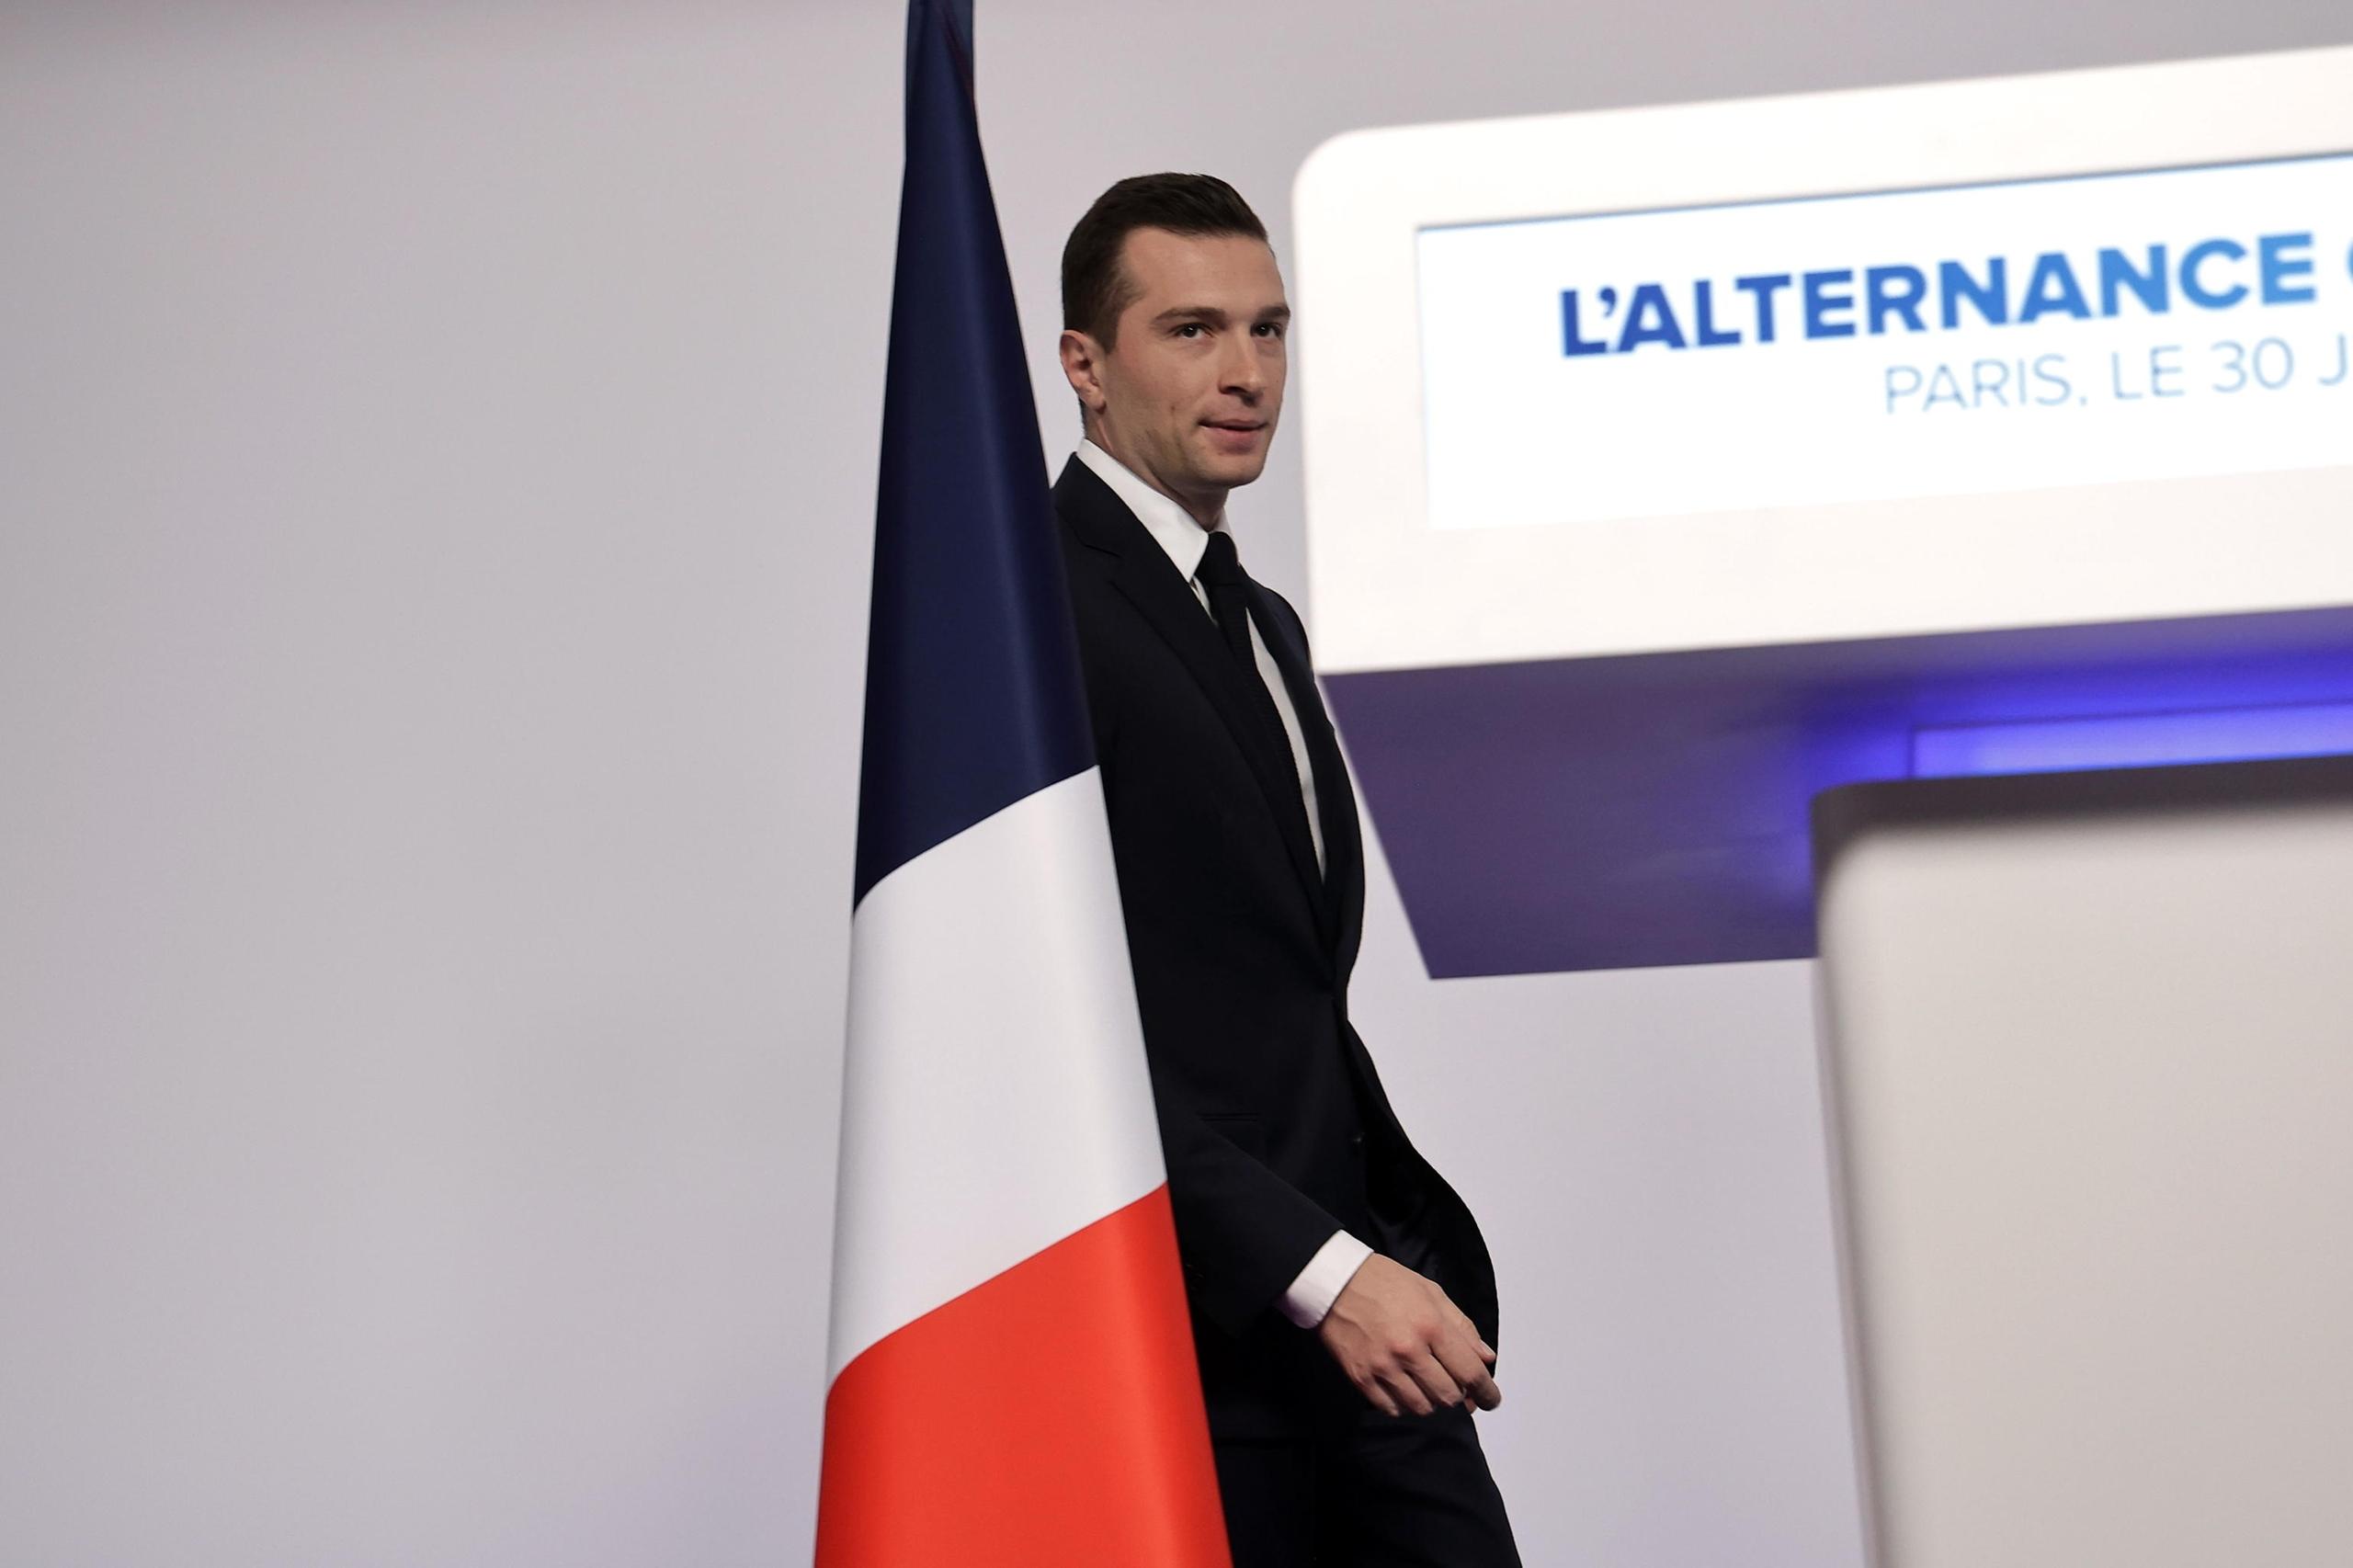 Elezioni in Francia, Bardella esulta: "Il verdetto è chiaro, sarò premier di tutti"